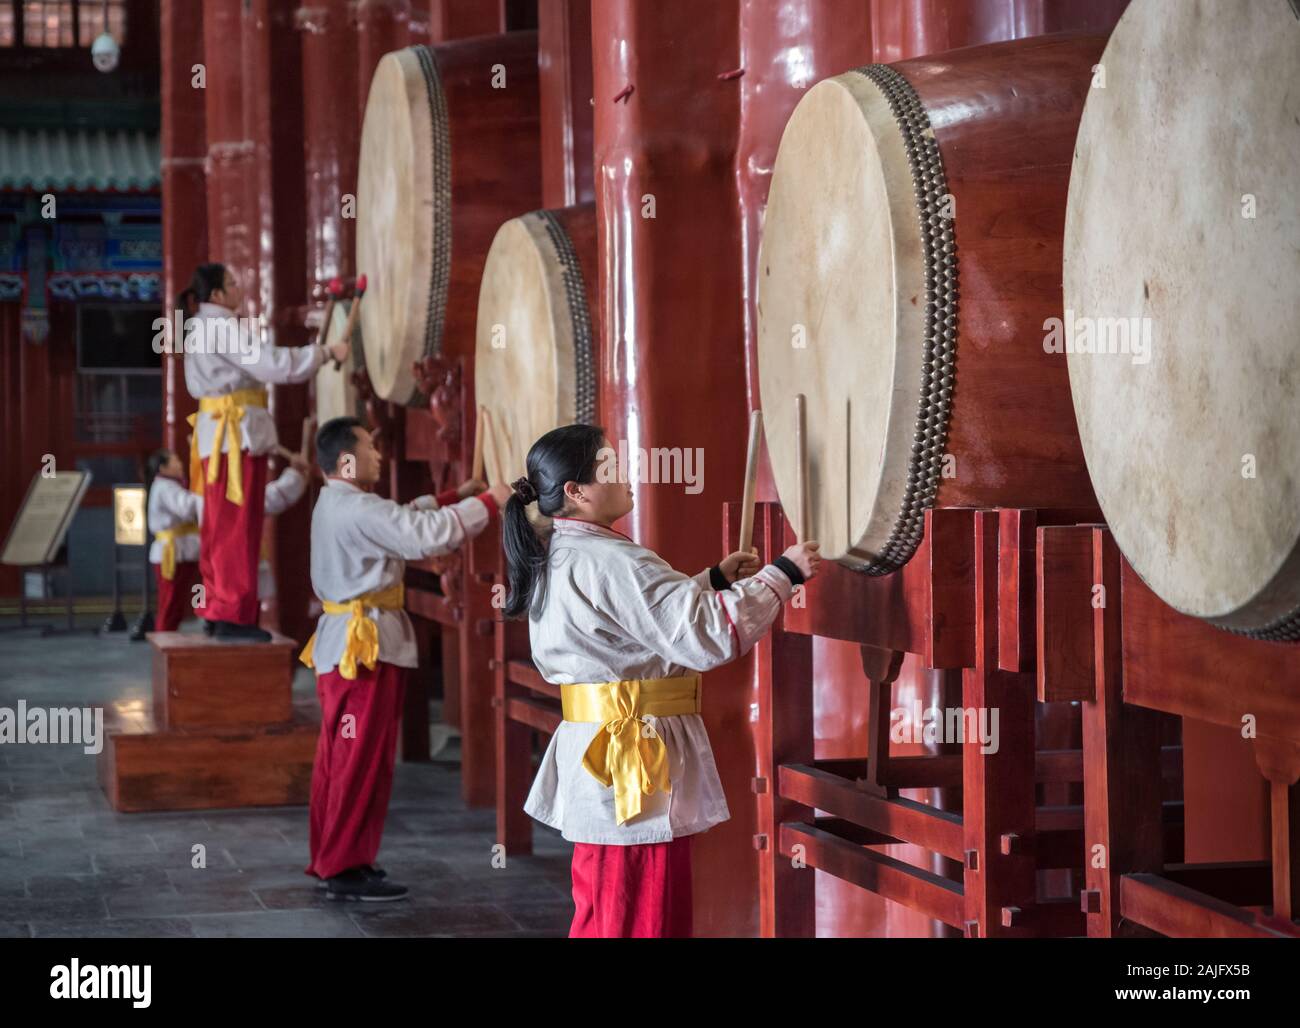 Pechino, Cina: Prestazioni presso la Torre del Tamburo a Pechino: interpreti giocare a battere i tamburi, esposizione del tamburo Foto Stock